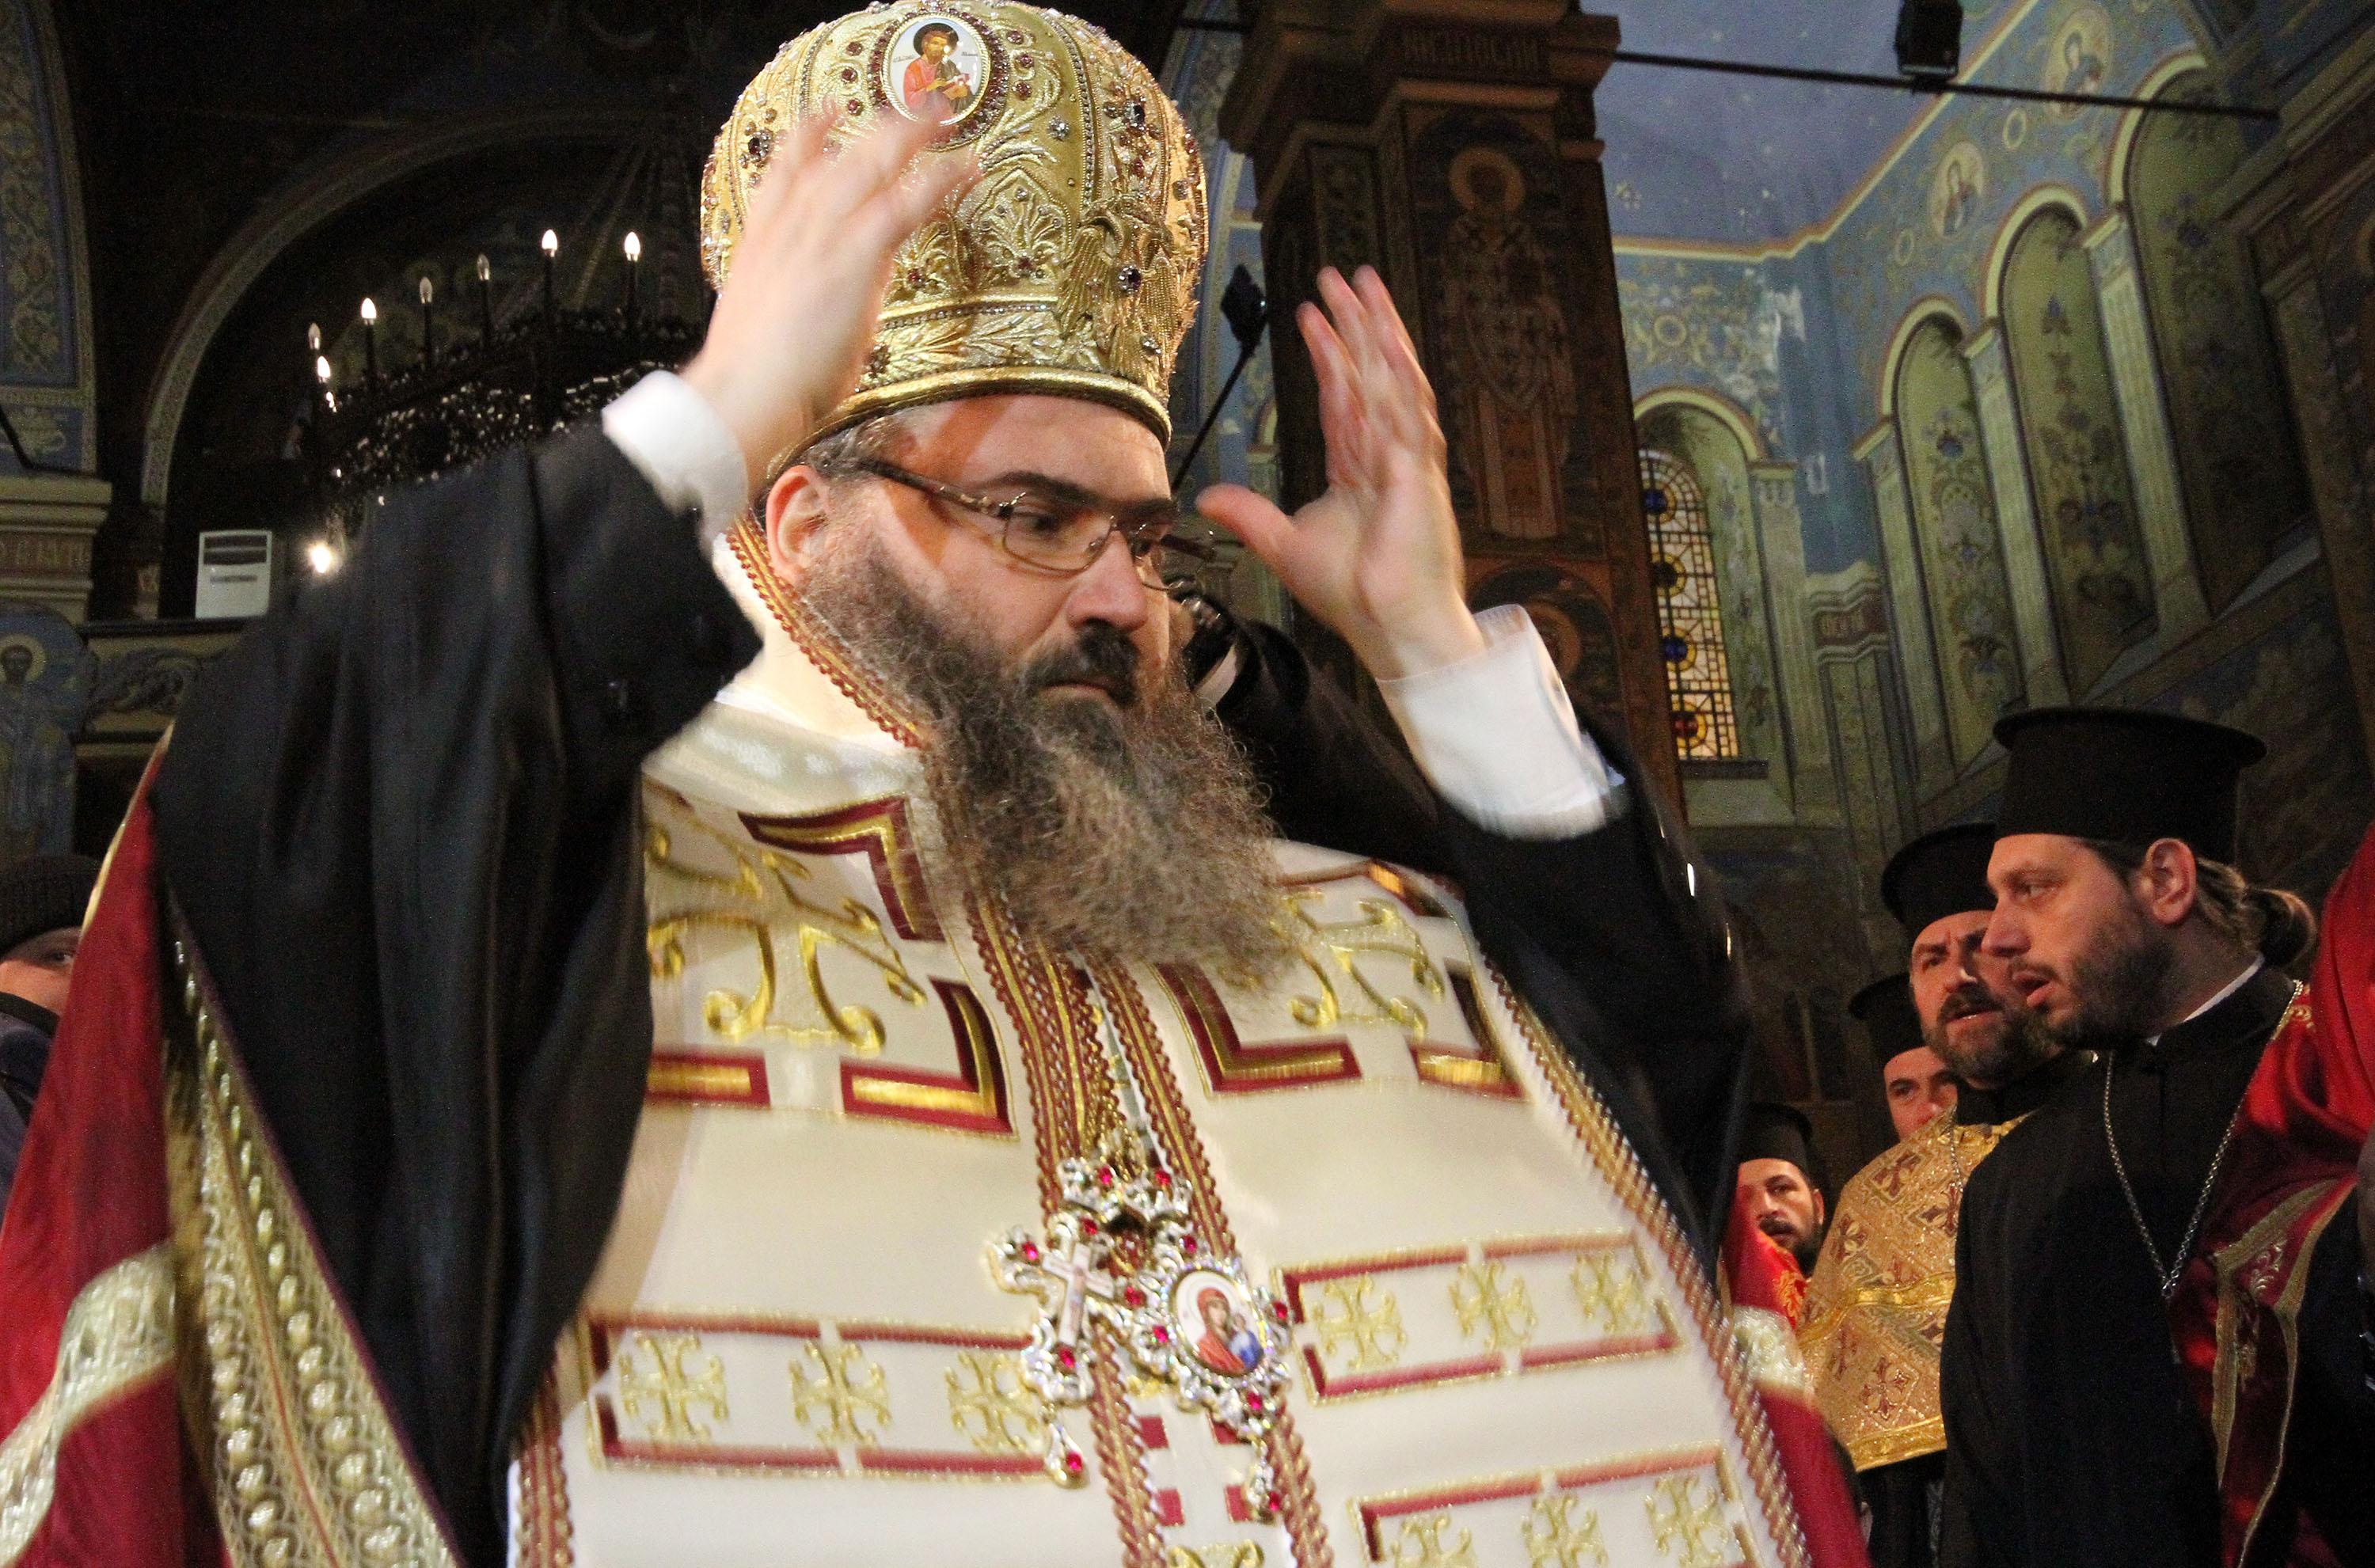 Очаква се Благодатният огън да е във Варна около 21.30-22.00 часа в събота, каза митрополит Йоан